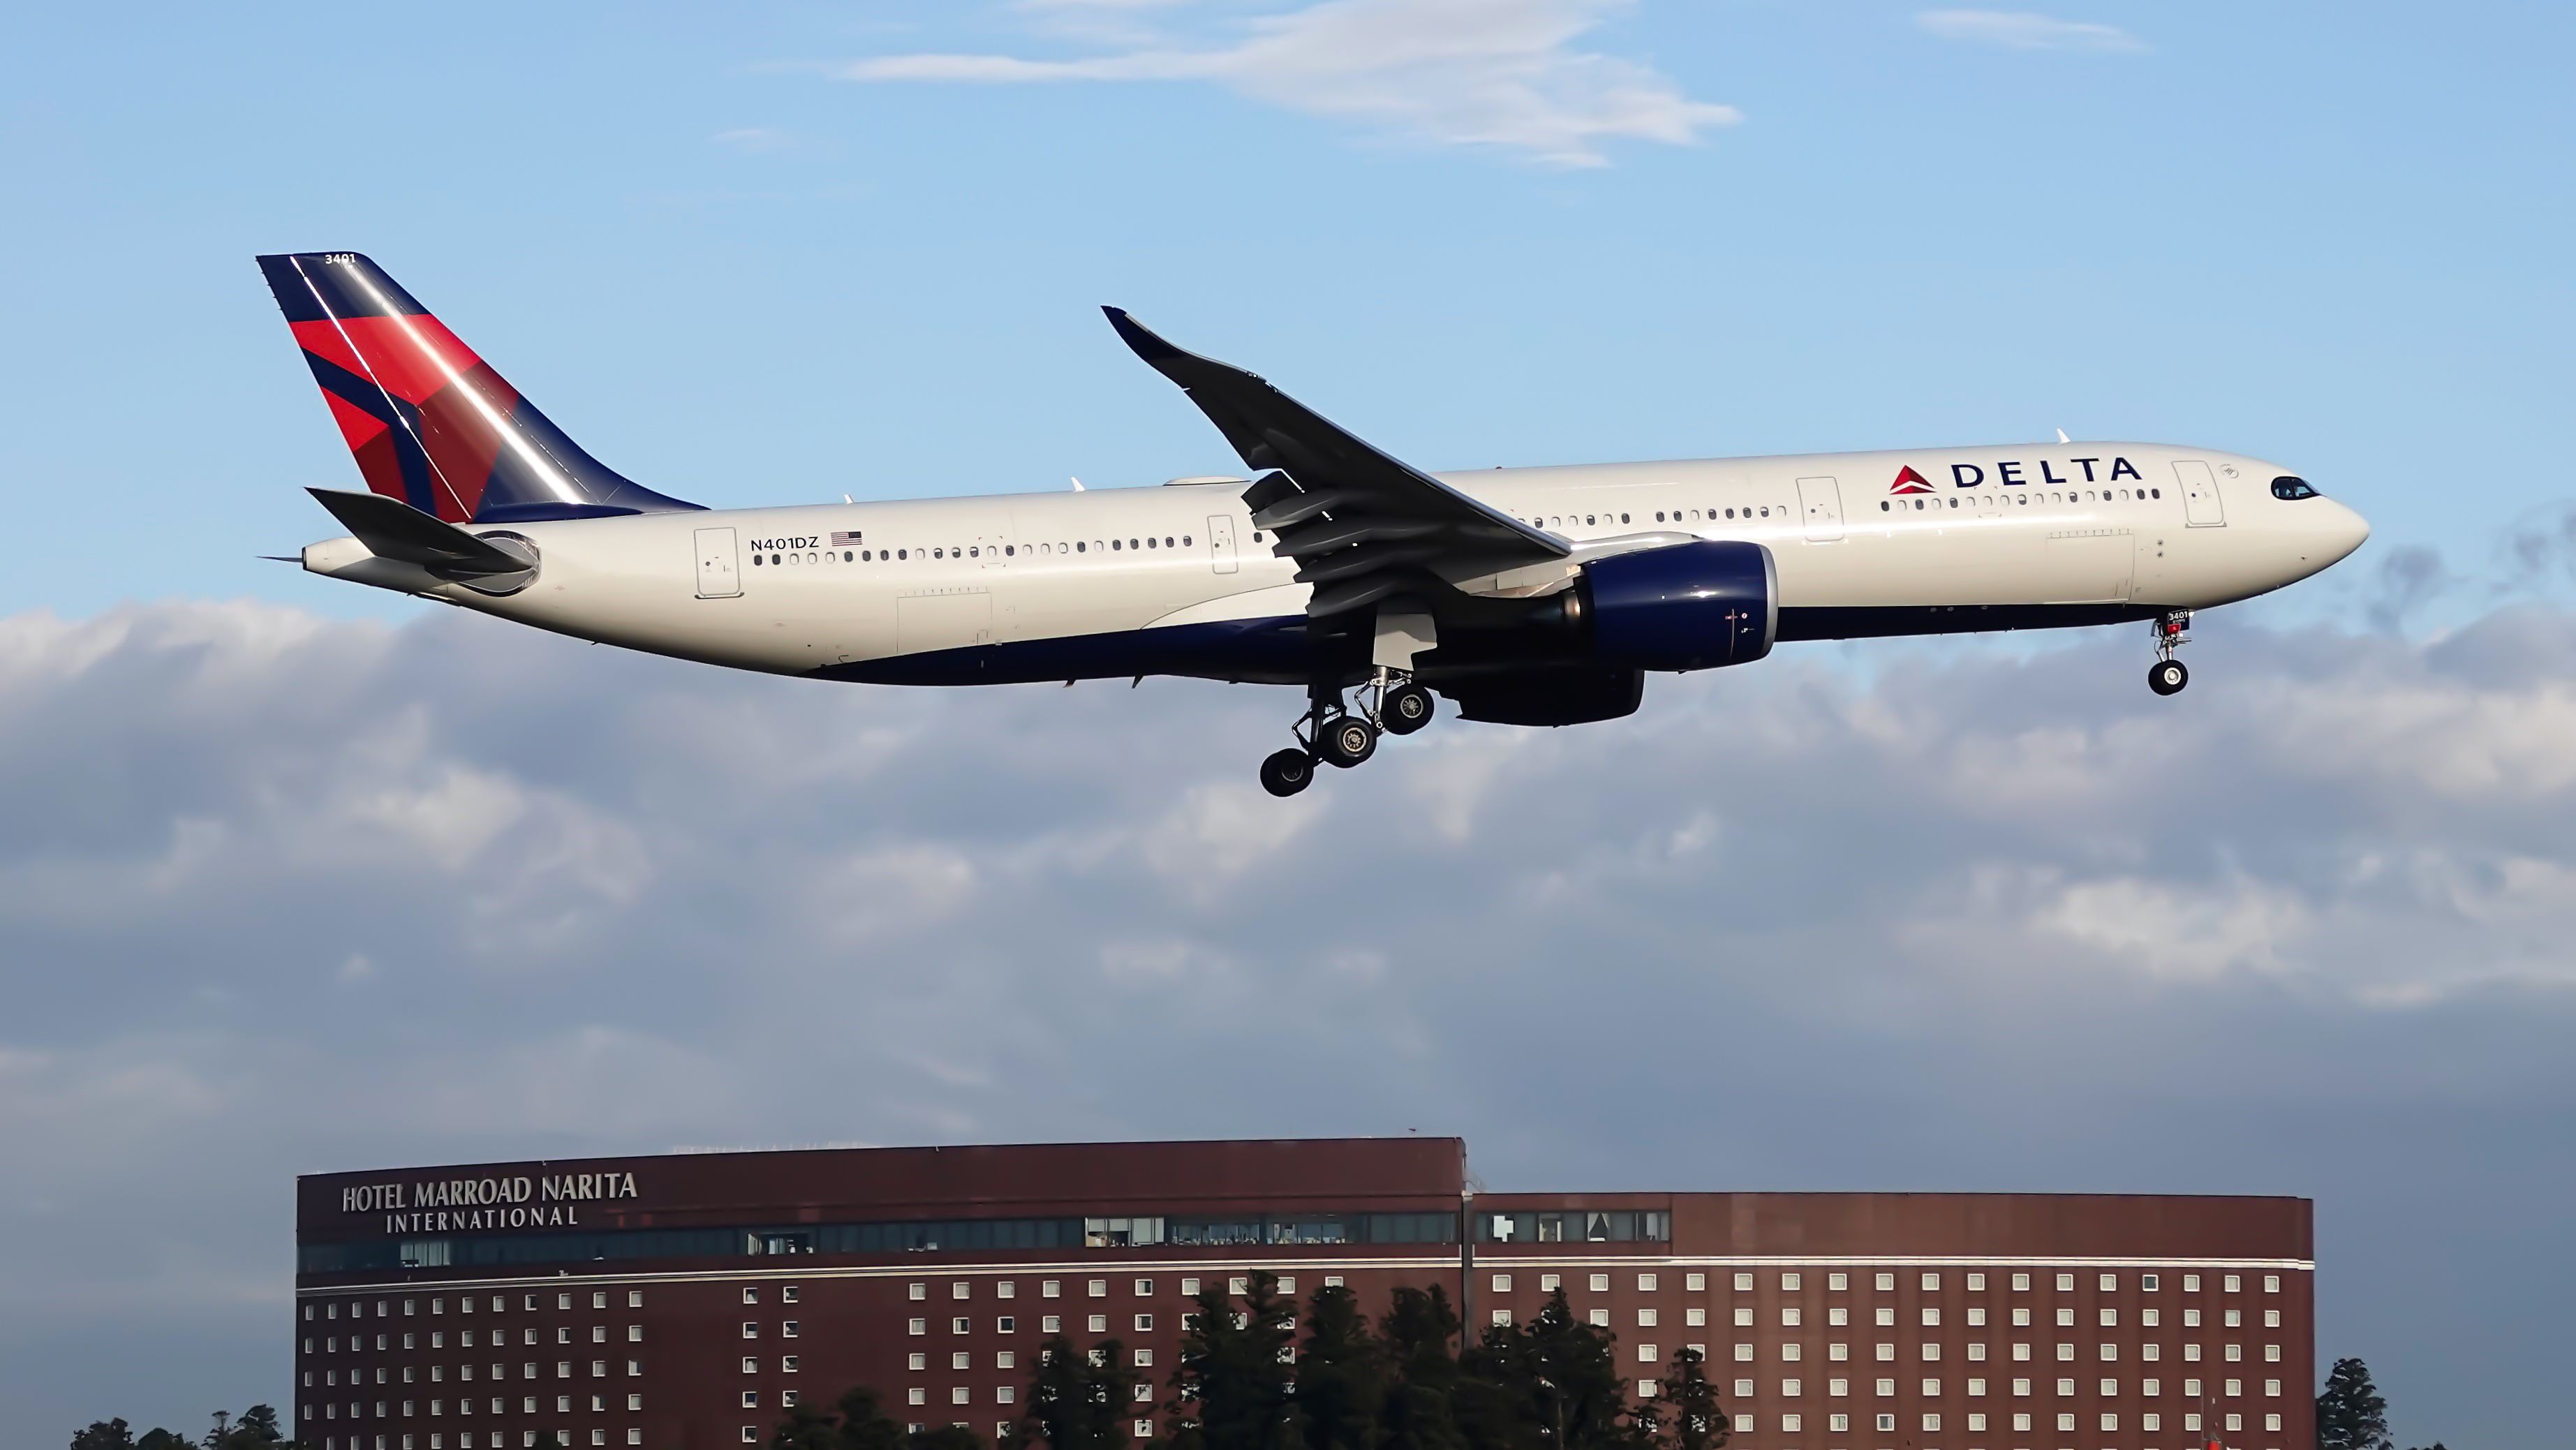 Delta A330-900 N401DZ. Landing at Narita Airport